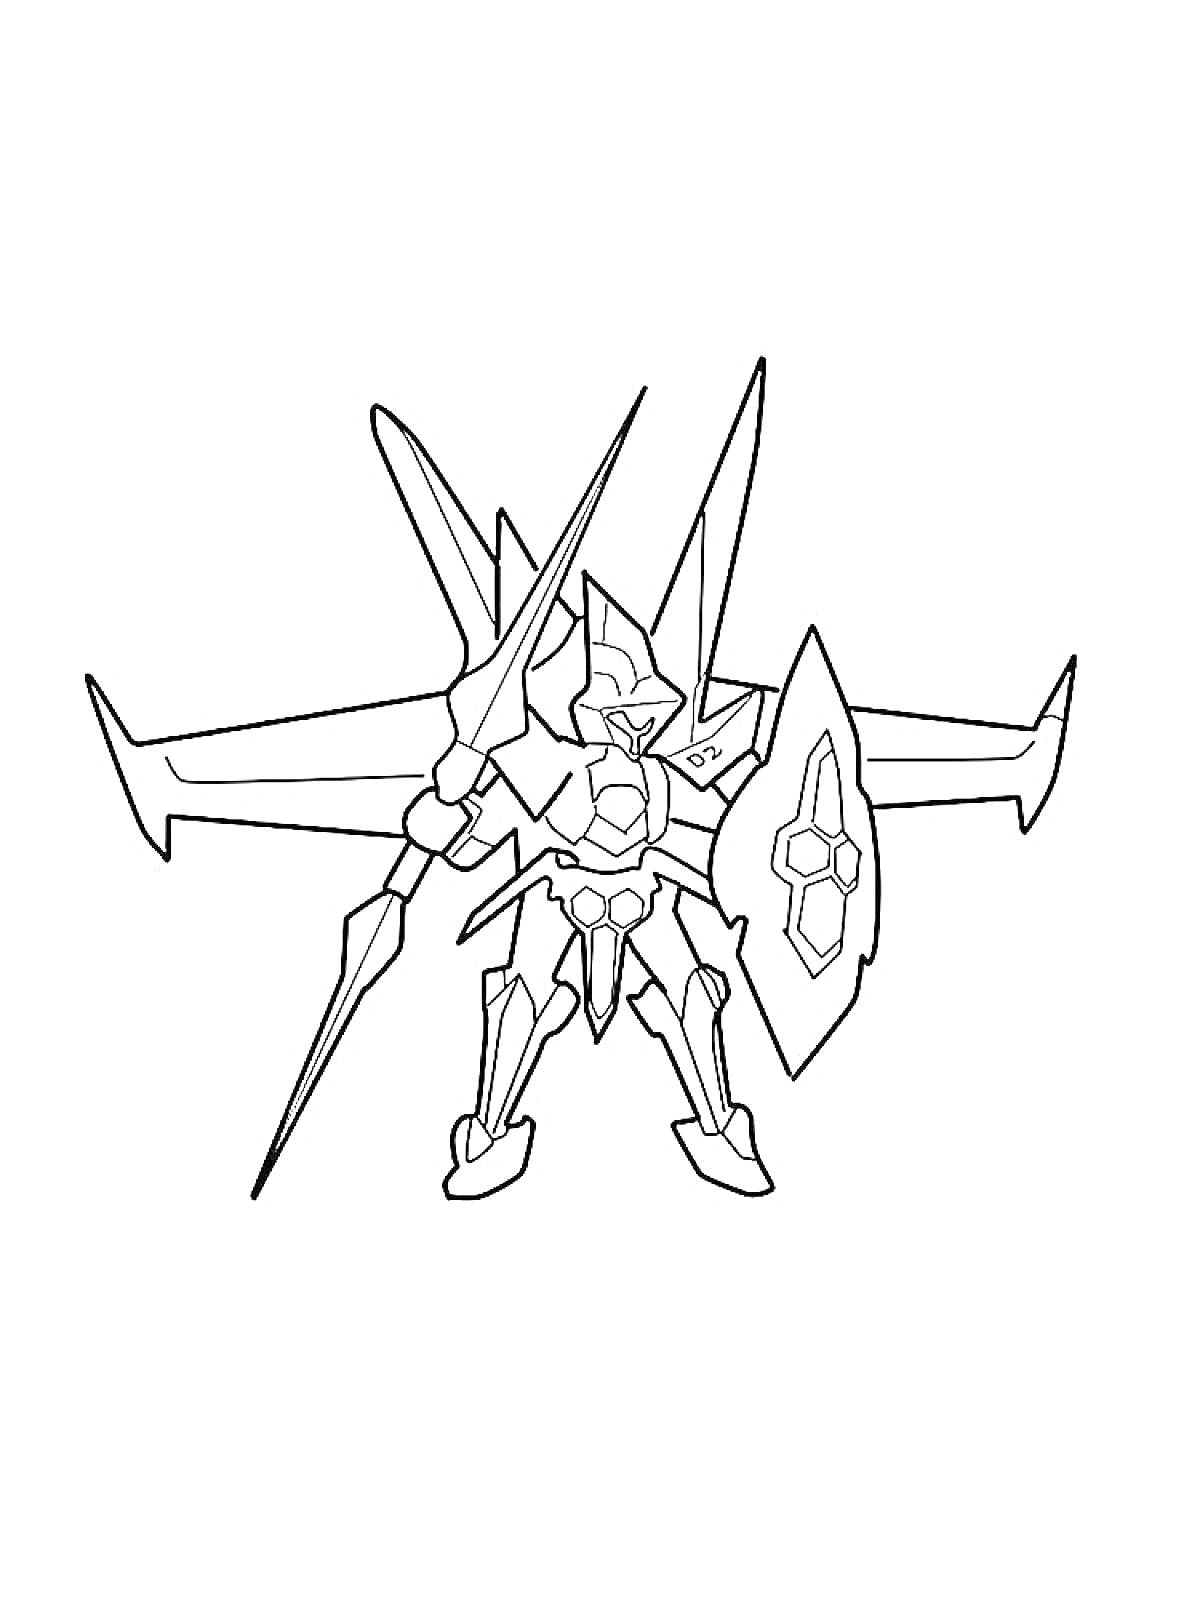 Раскраска Робот с оружием и щитом из LBX, с крыльями и шипами